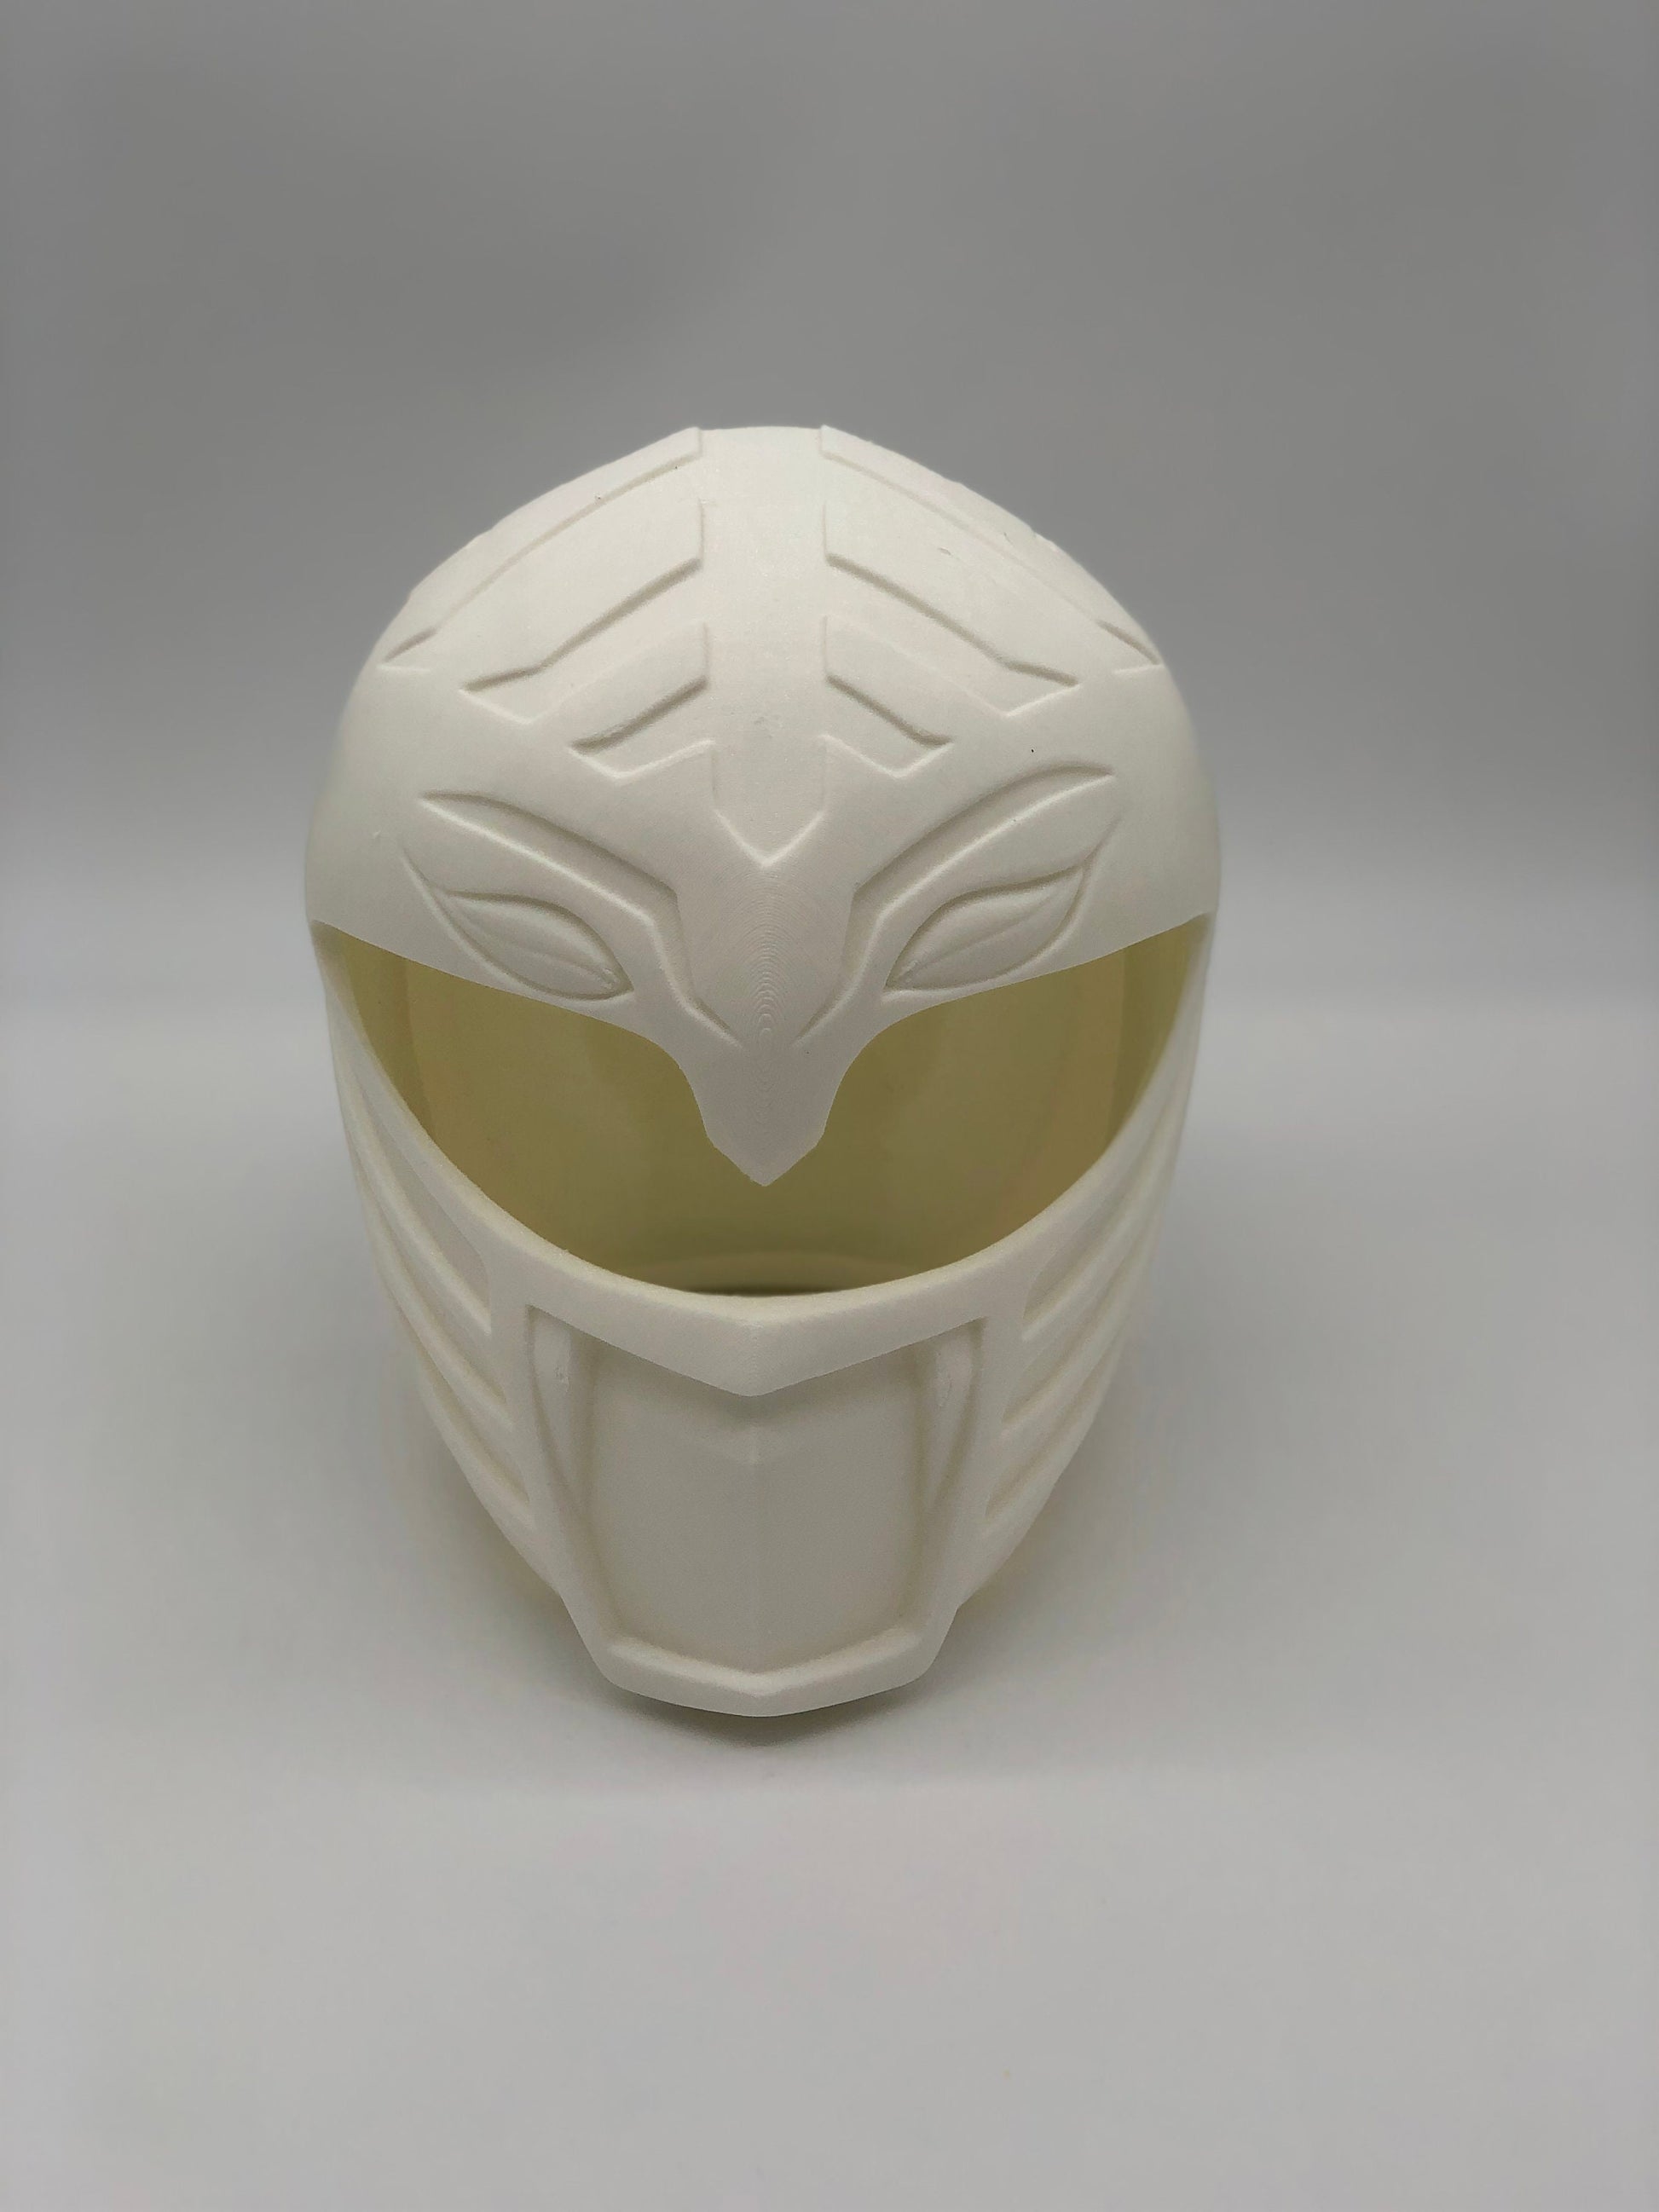 White Power Rangers Cosplay Helmet